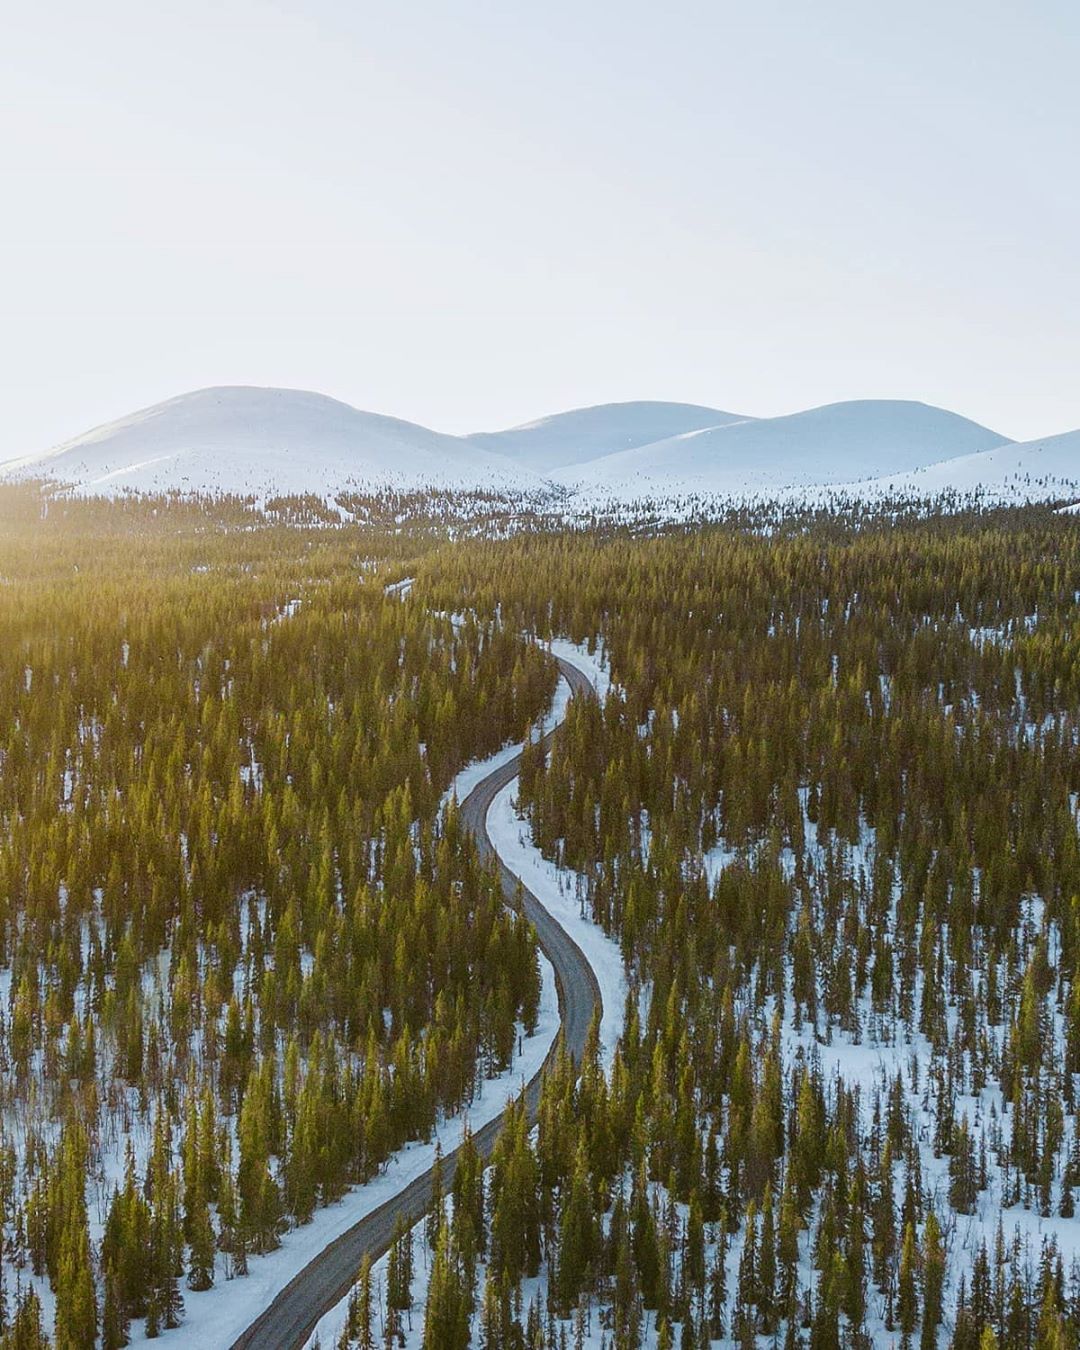 Очарование Севера: чудесная Лапландия на фото Лапландия,тревел-фото,Финляндия